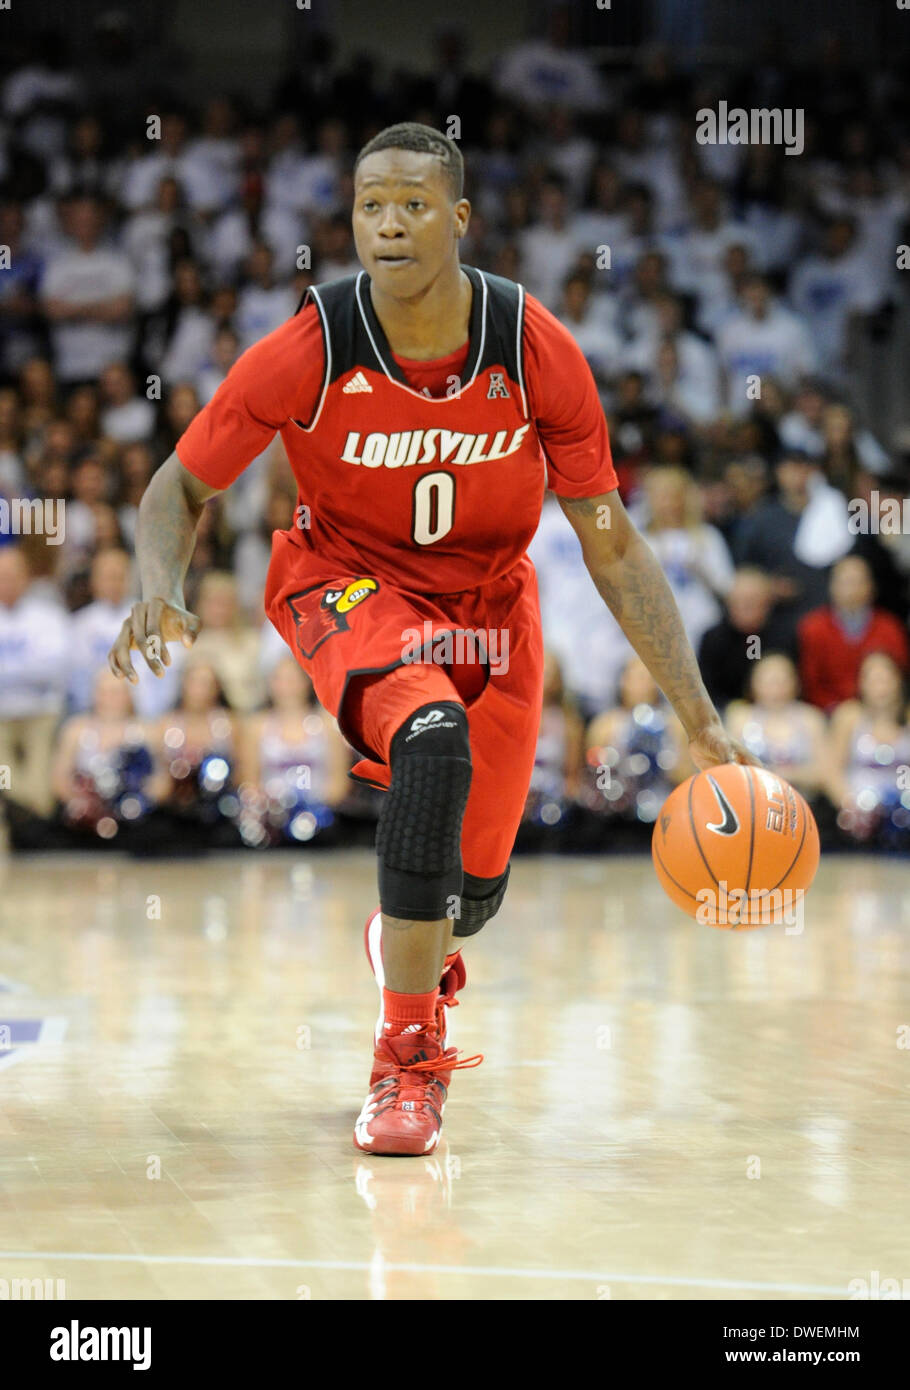 05 mars 2014 : Louisville Cardinals avant Terry Rozier # 0 lors d'un match  de basket-ball de NCAA entre l'Université de Louisville Cardinals et les  Mustangs de l'Université Méthodiste du Sud au